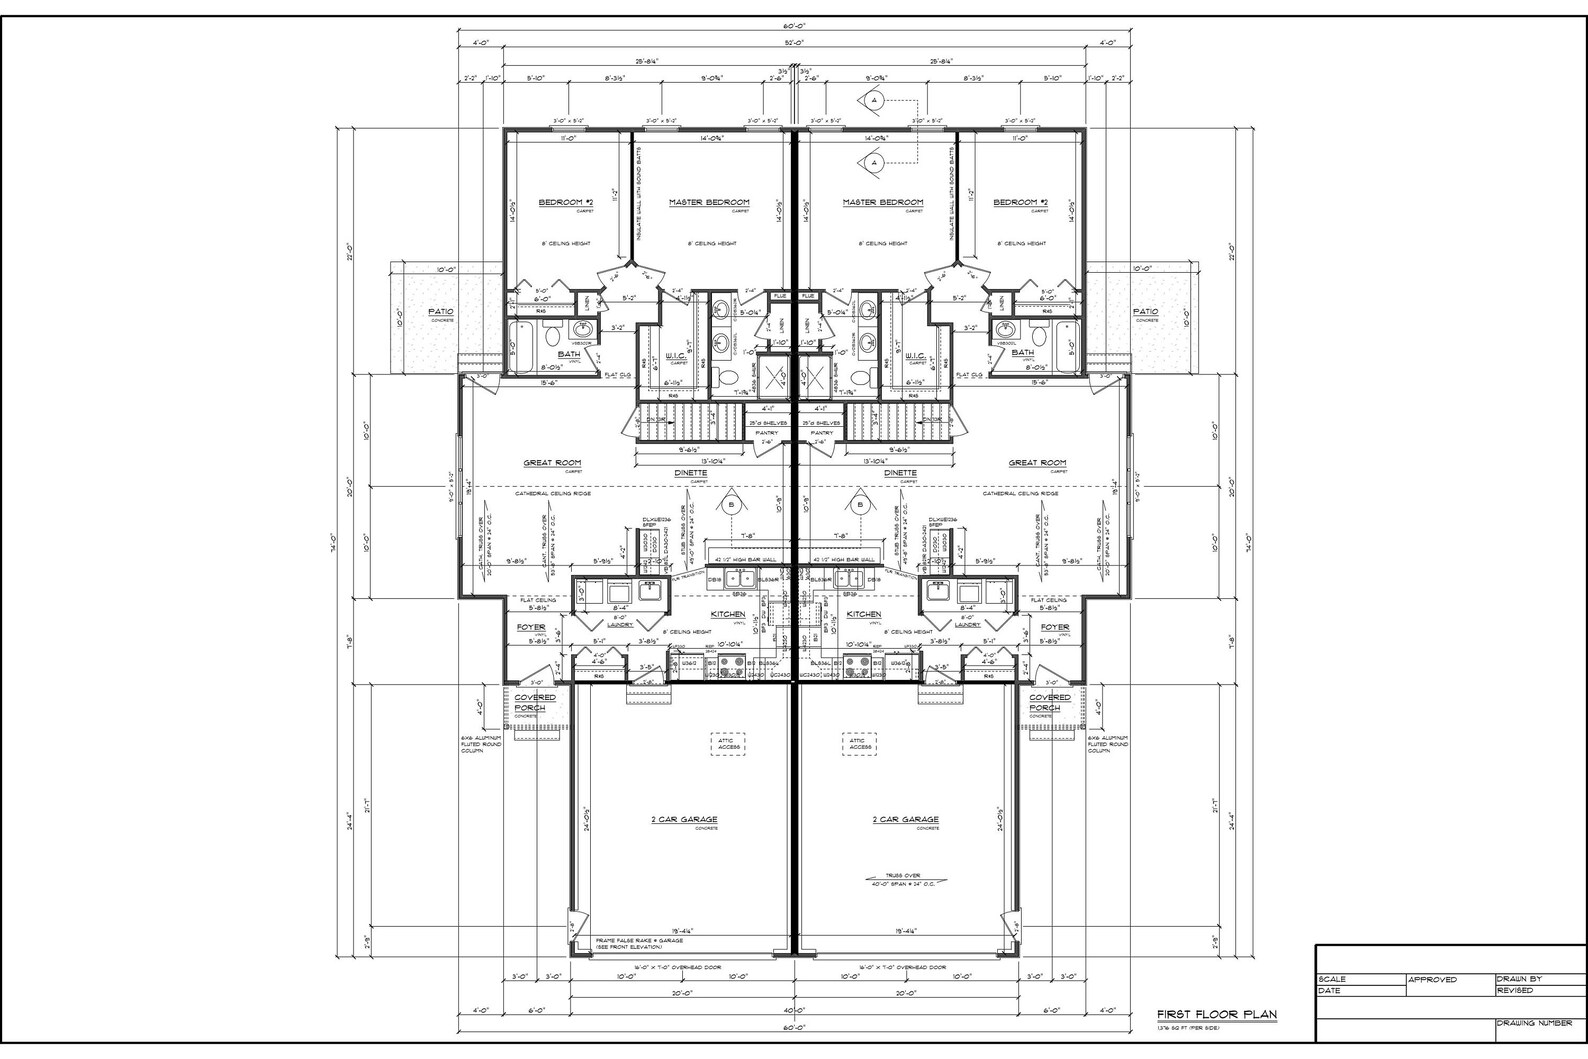 Full Set of Condominium / Duplex Building Plans 1,376 Sq Ft - Etsy